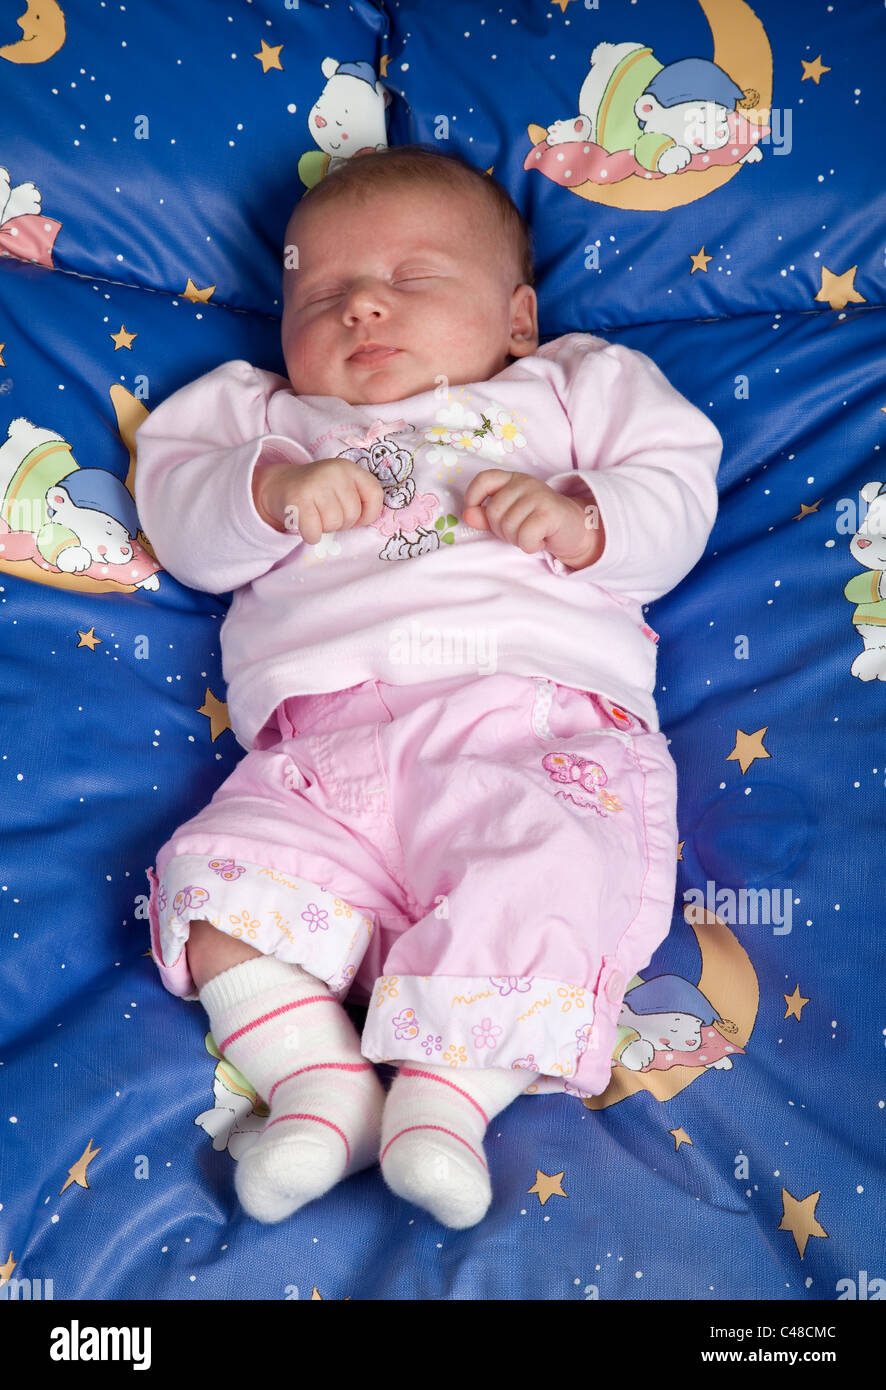 Kleinkind, Baby, 5 Wochen alt, liegt im Bettchen und schläft Stock Photo